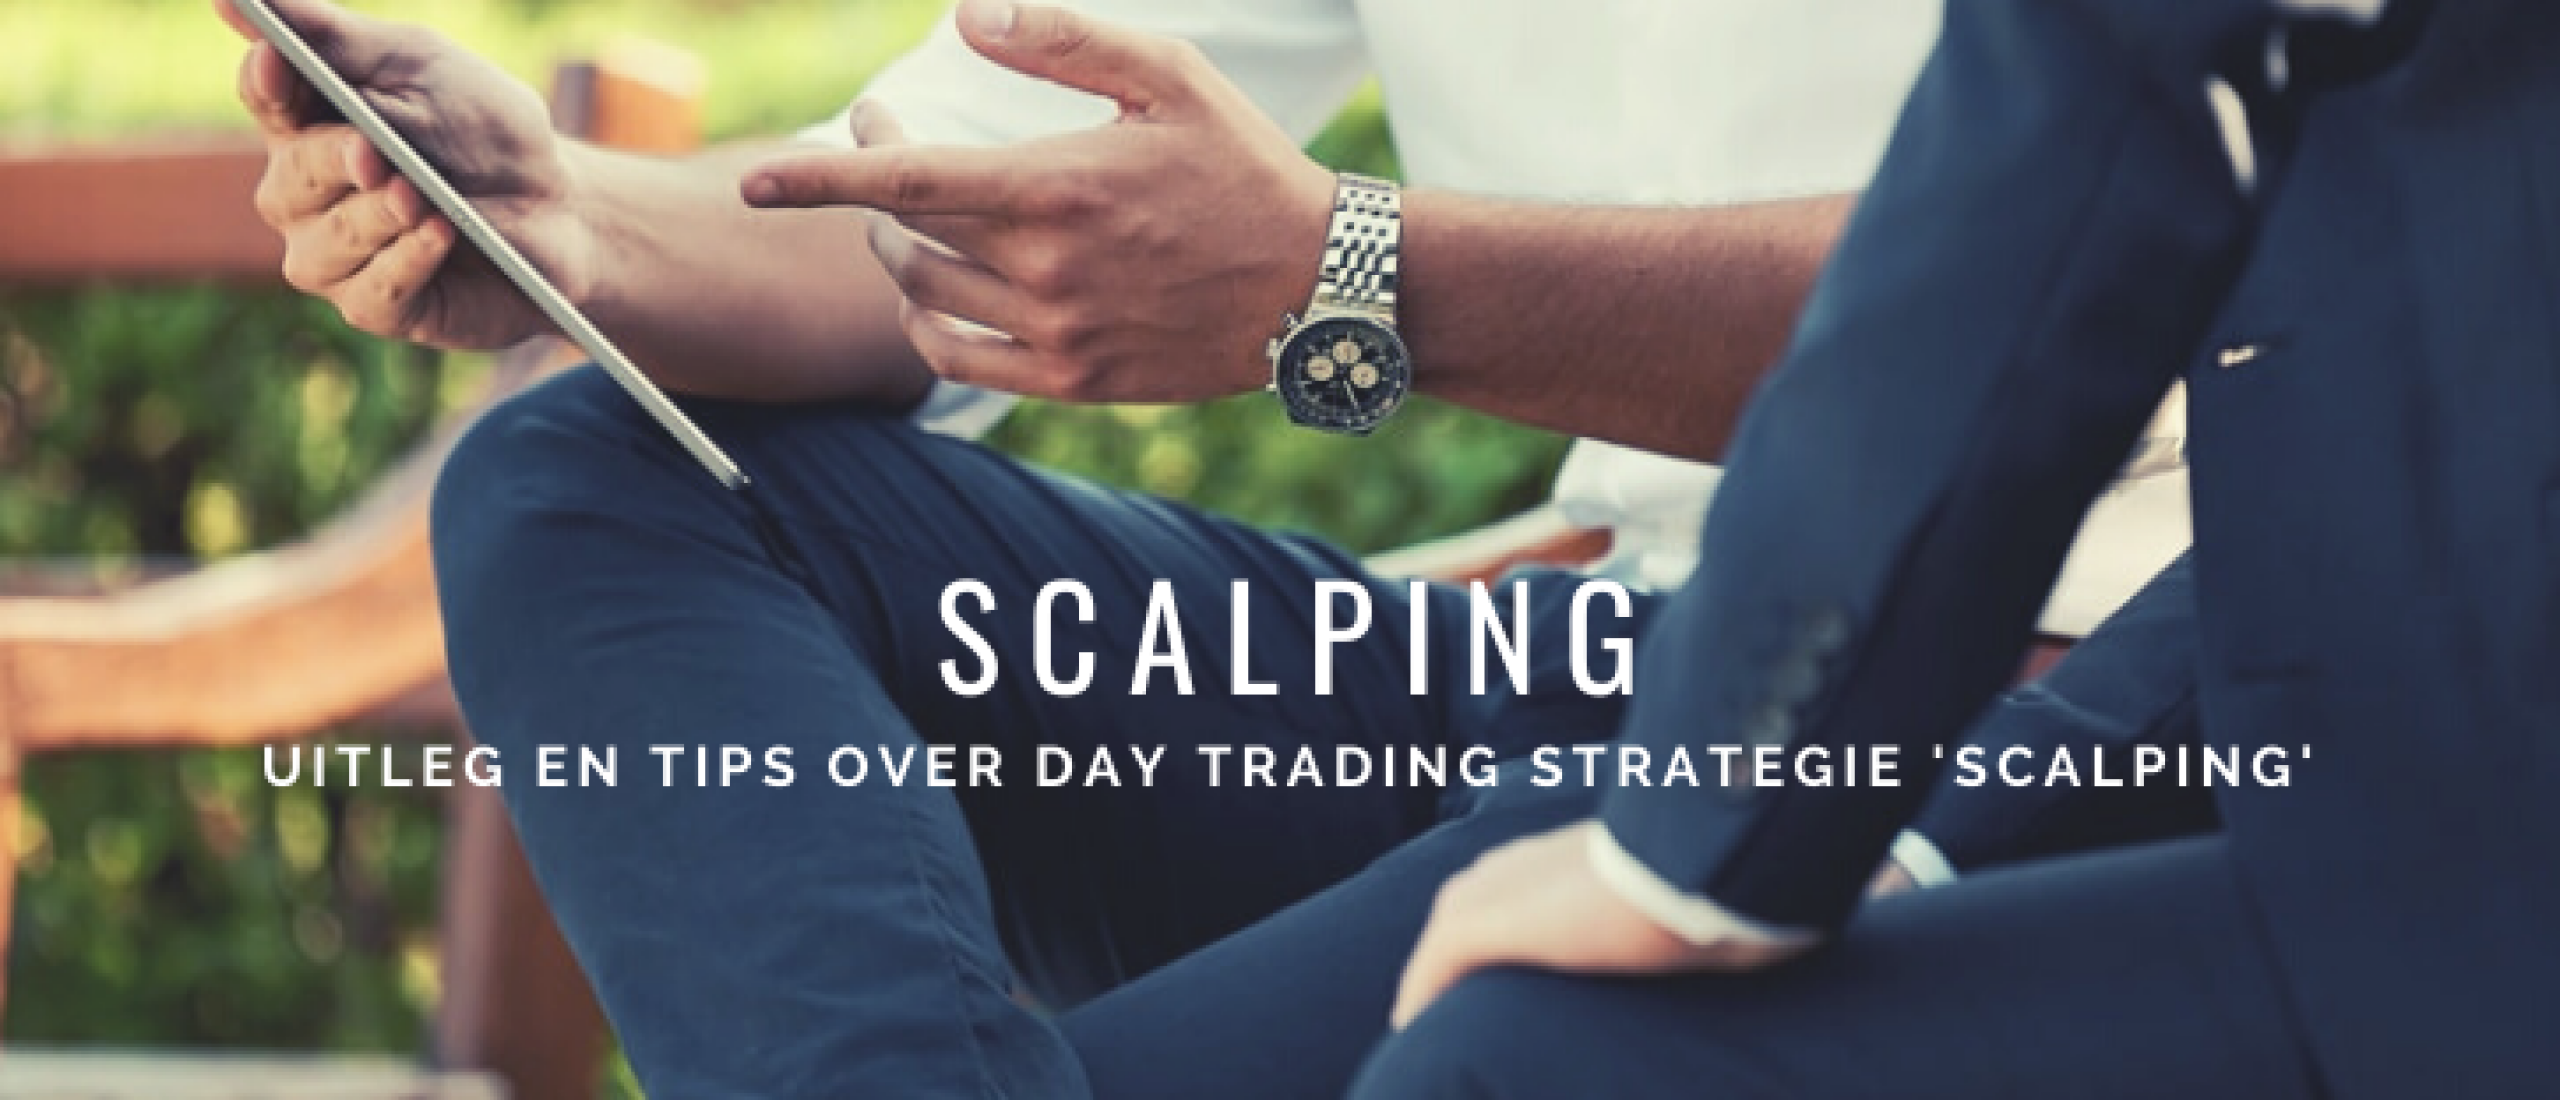 Day Trading Strategie Scalping: Uitleg en Tips